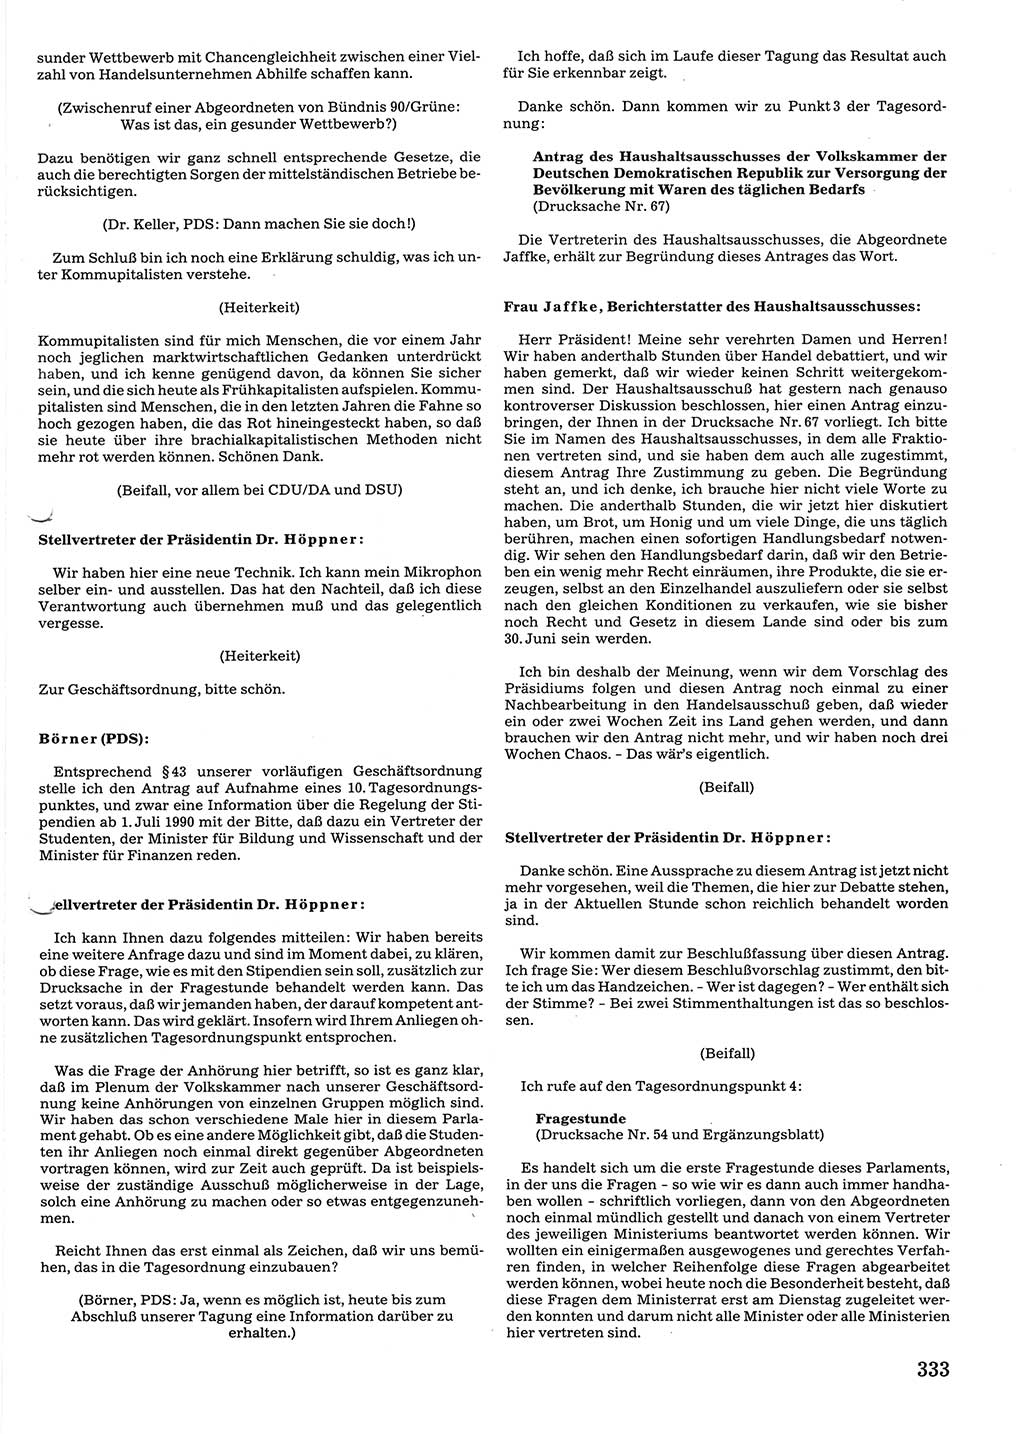 Tagungen der Volkskammer (VK) der Deutschen Demokratischen Republik (DDR), 10. Wahlperiode 1990, Seite 333 (VK. DDR 10. WP. 1990, Prot. Tg. 1-38, 5.4.-2.10.1990, S. 333)